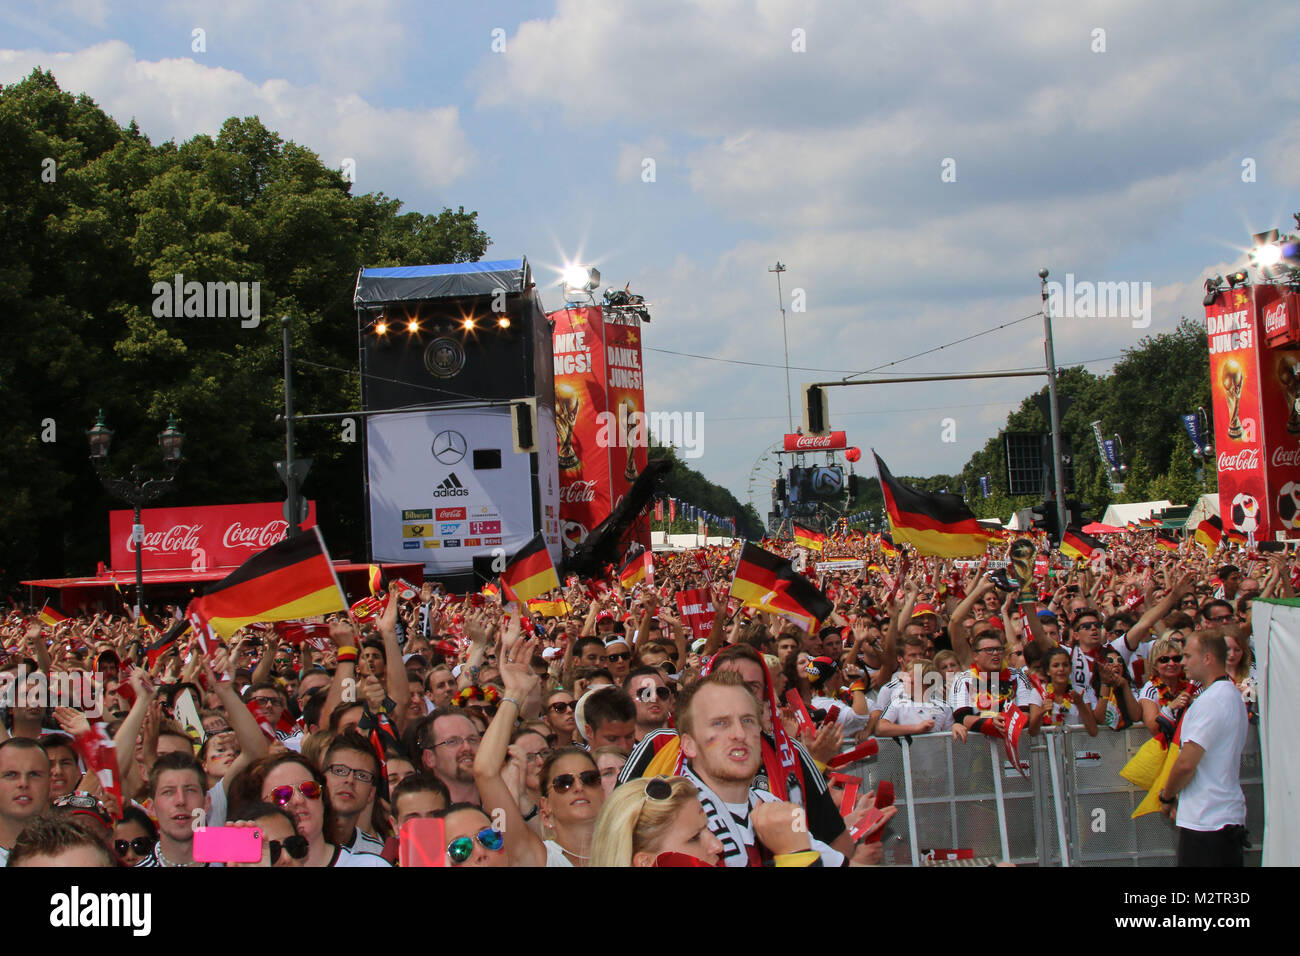 Fans, Empfang der deutschen Fussballmannschaft nach dem Gewinn des Weltmeistertitels auf der Fanmeile in Berlin, Berlin, 15.07.2014 Stock Photo